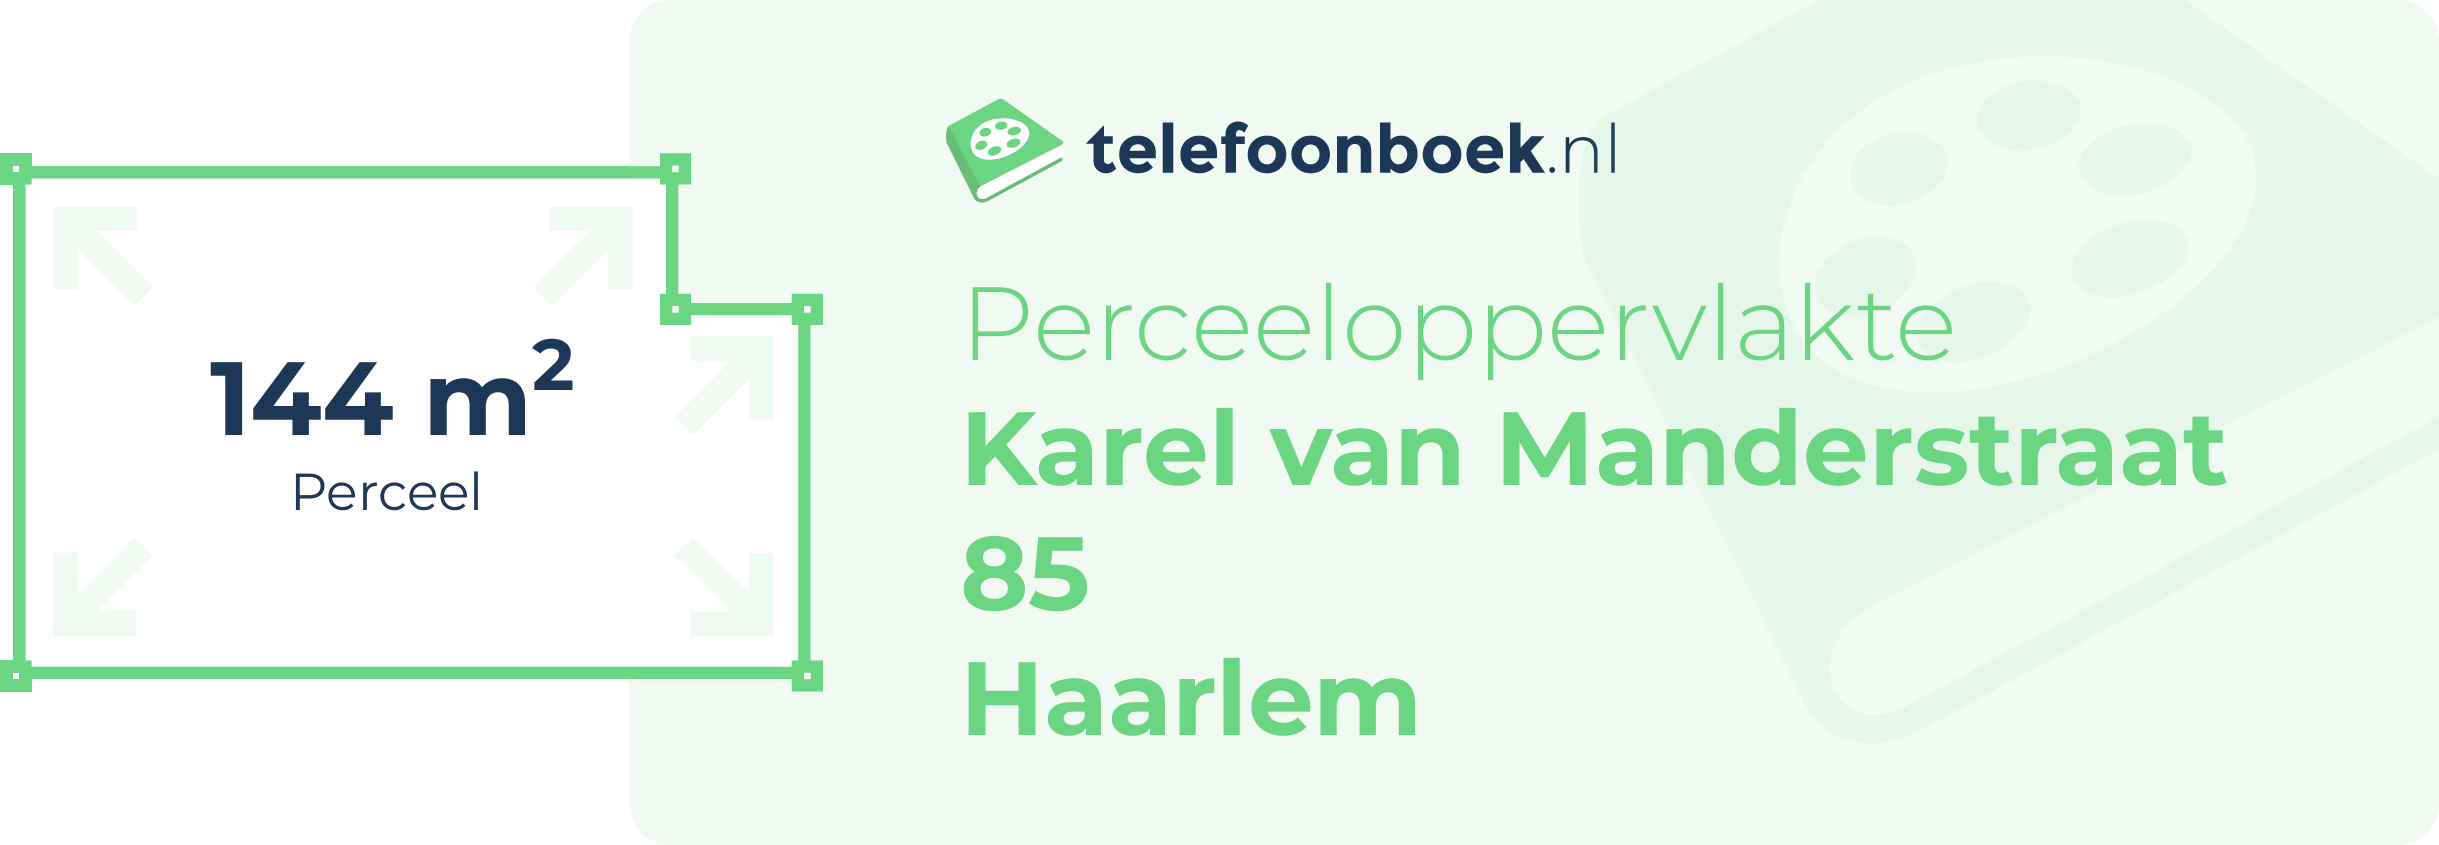 Perceeloppervlakte Karel Van Manderstraat 85 Haarlem